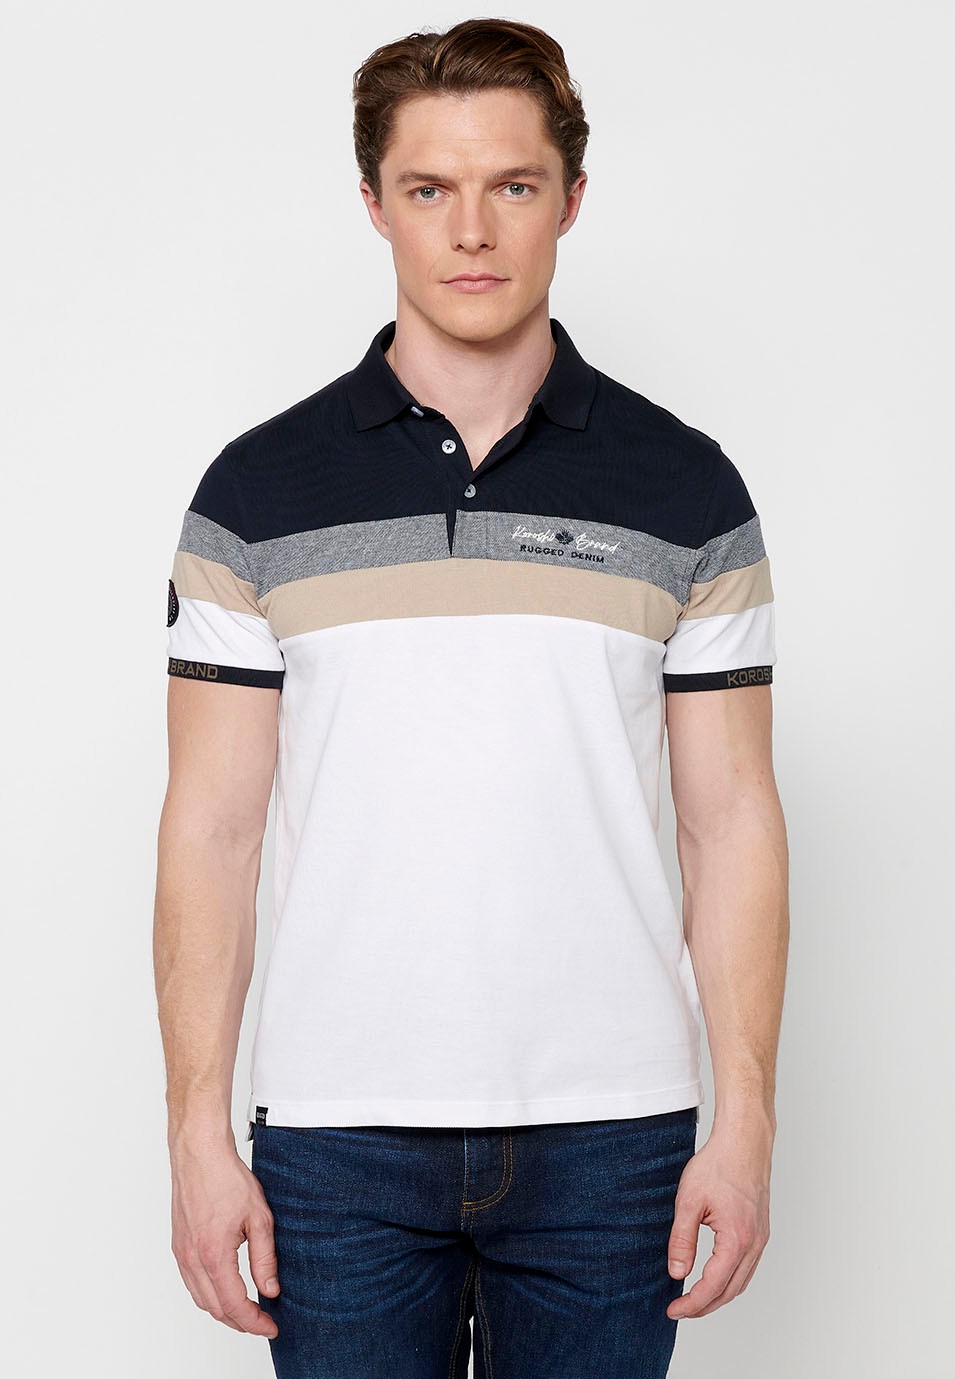 Kurzarm-Poloshirt aus 100 % Baumwolle, Streifendetail auf der Brust, weiße Farbe für Herren